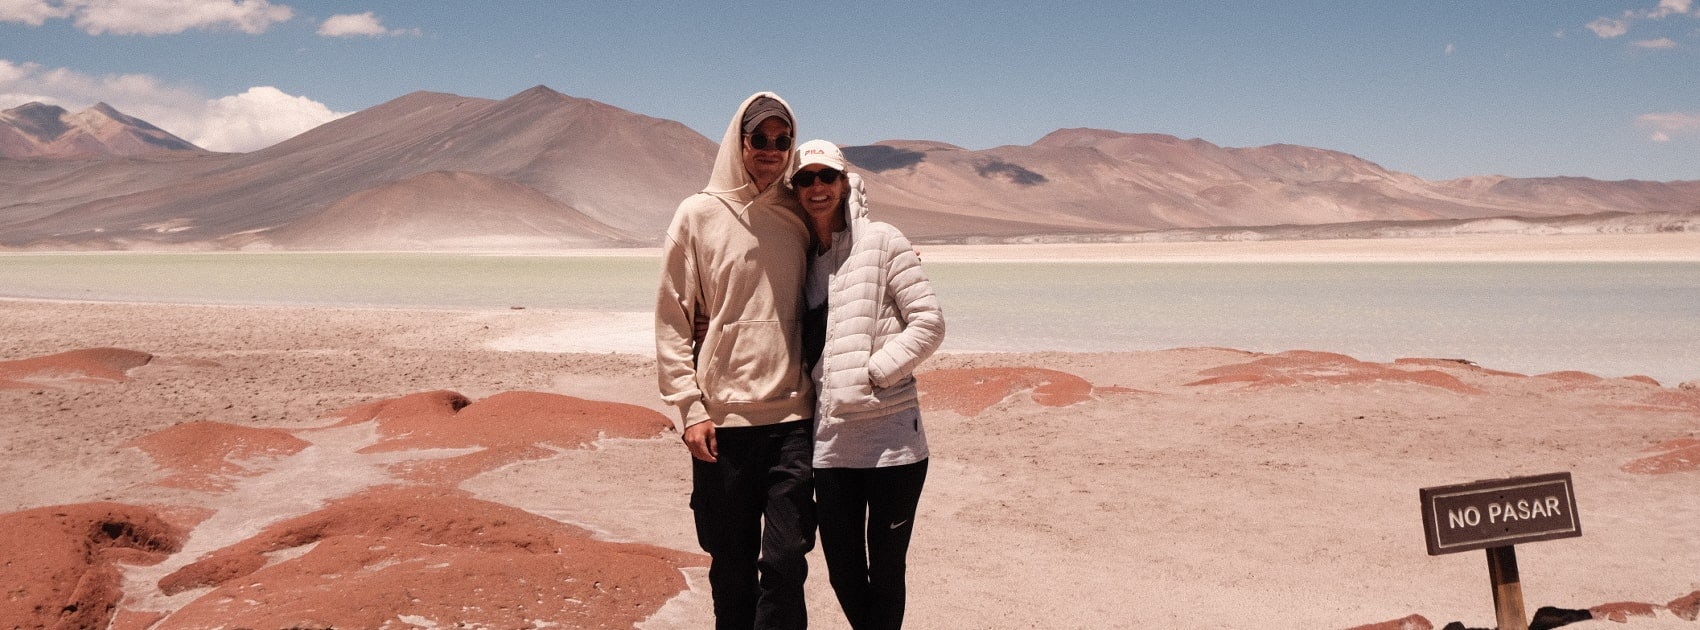 Klara and Alex in the Atacama Desert, Chile